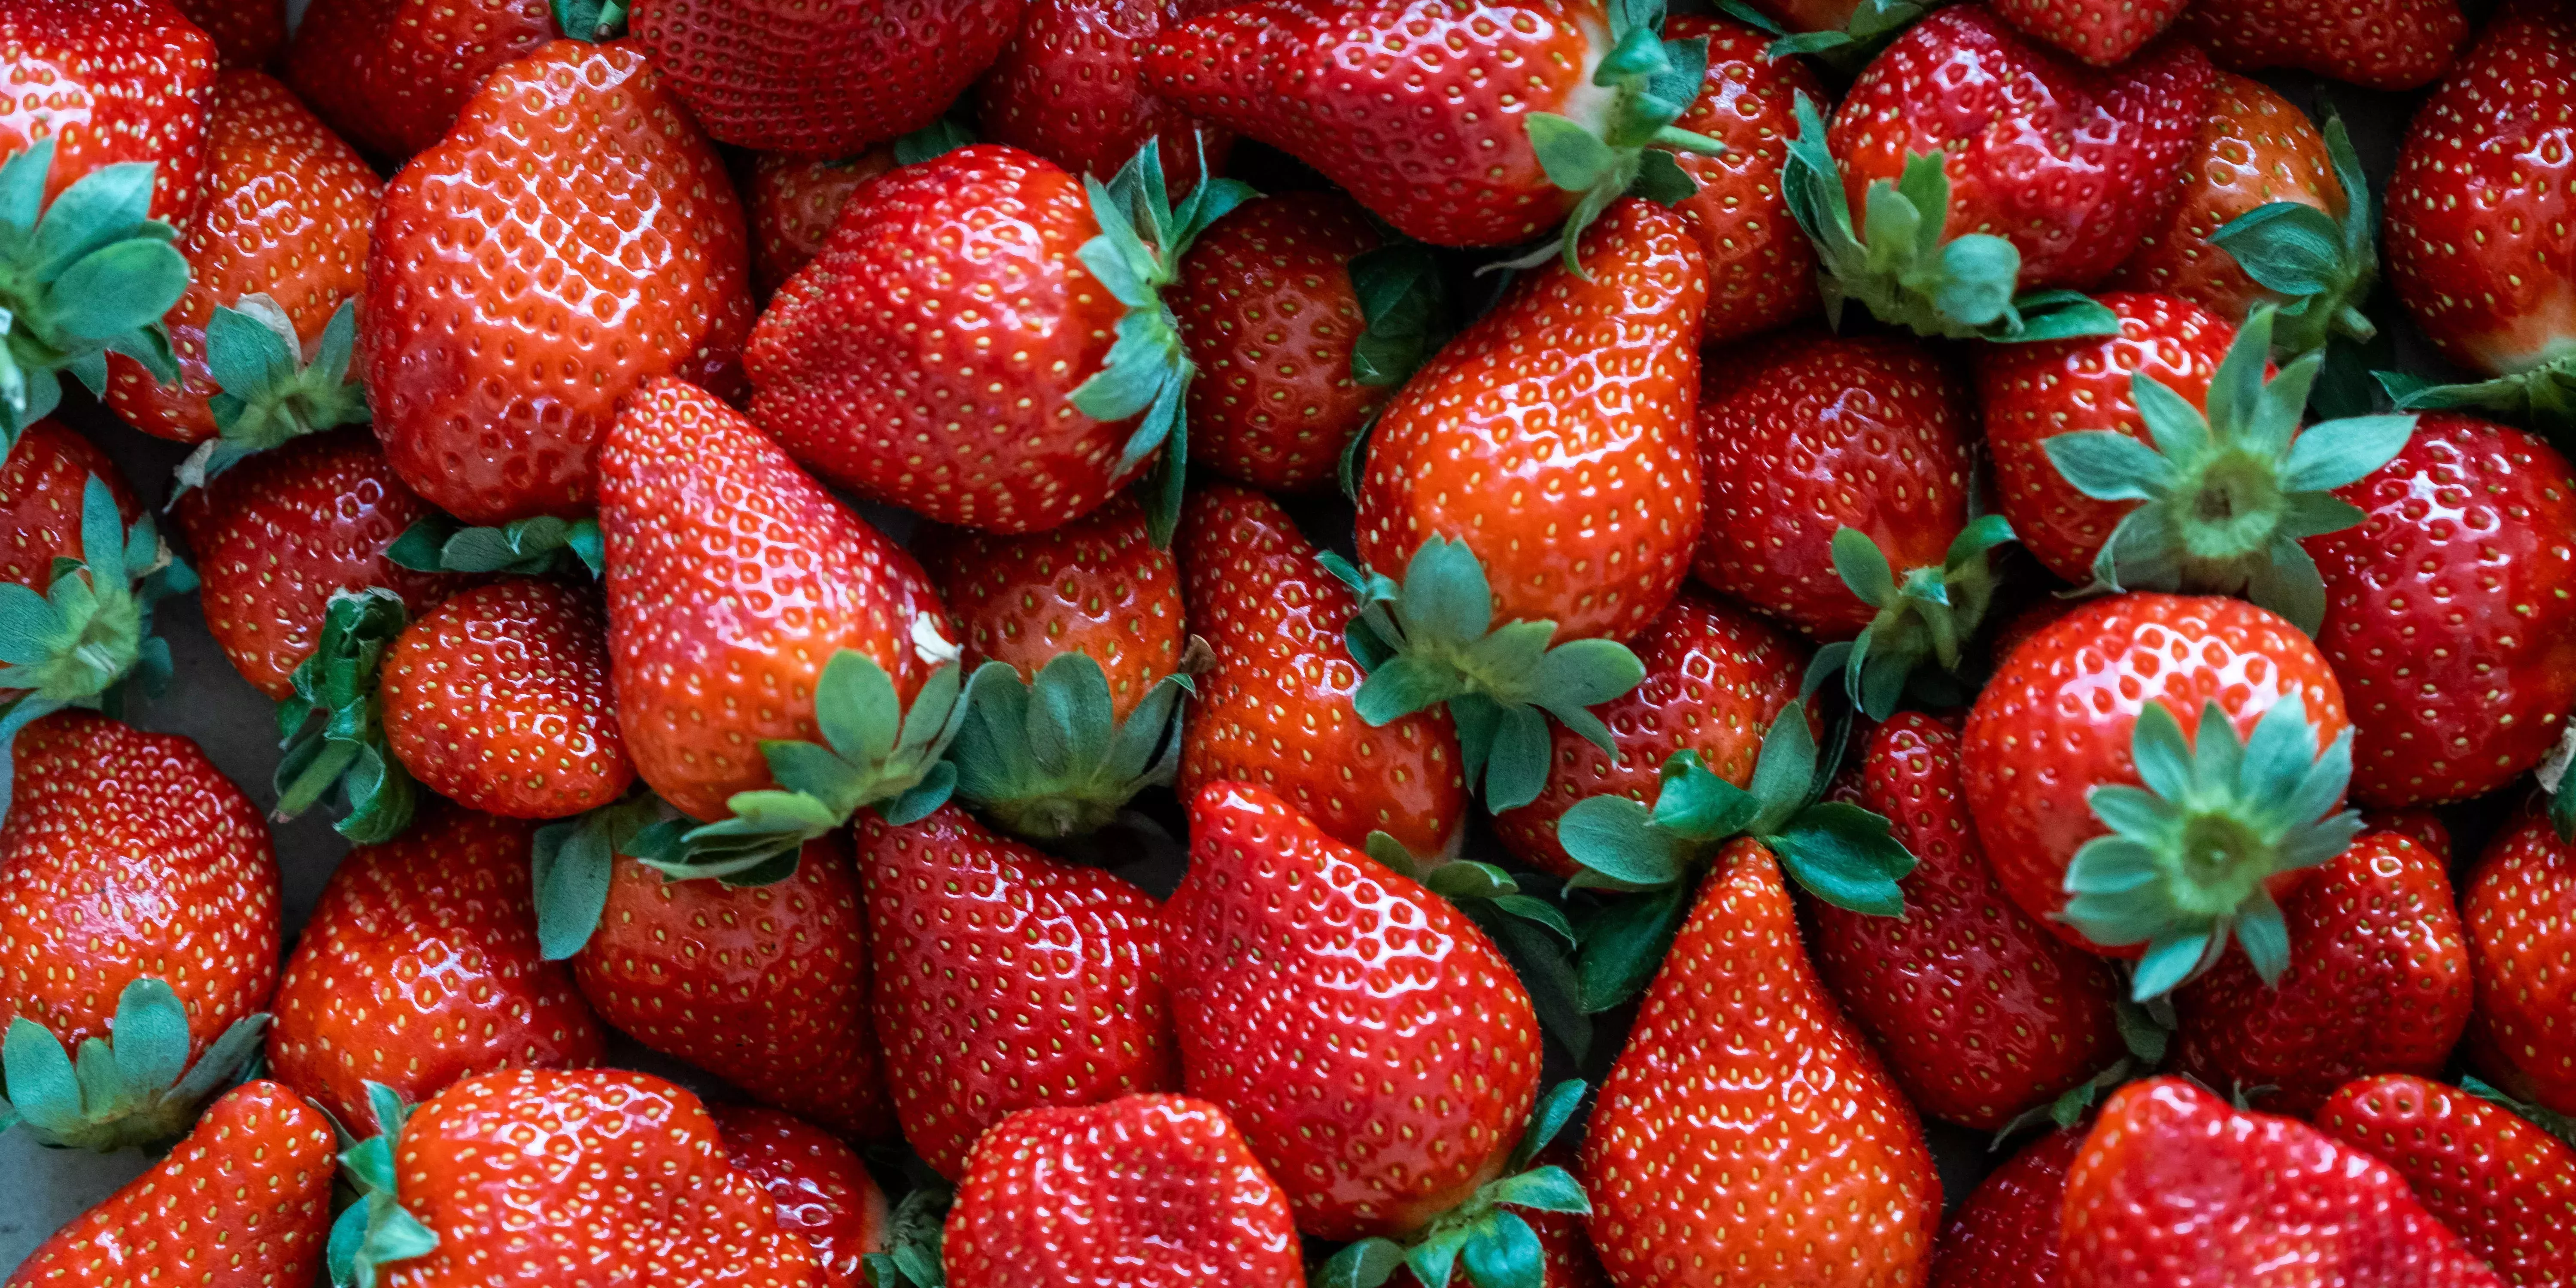 Las fresas siguen siendo el producto estadounidense con más pesticidas, según un informe. Estas son las 12 frutas y verduras de la lista de la 